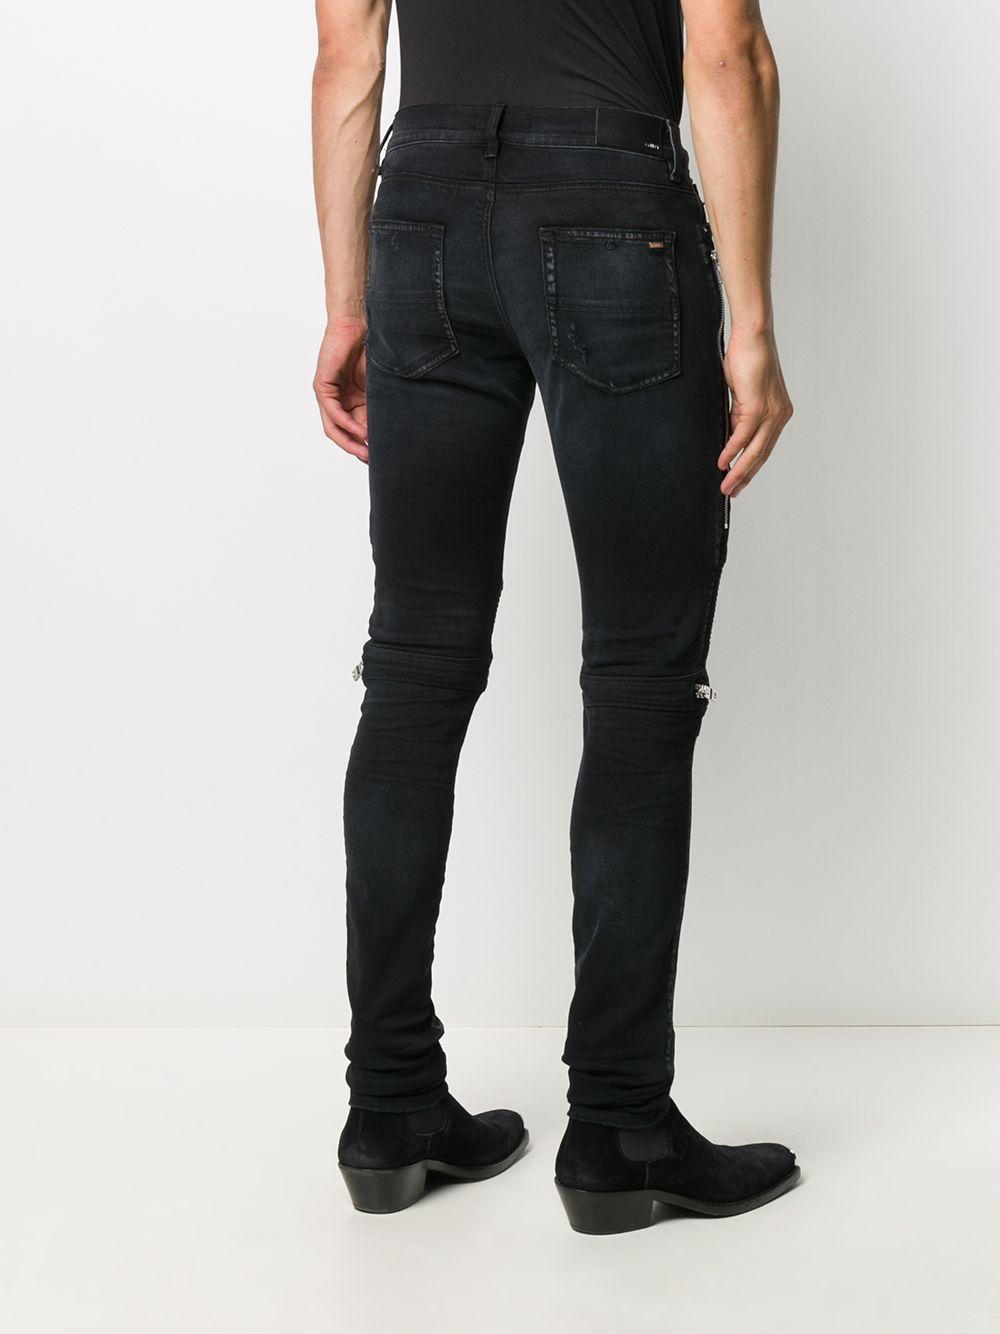 Amiri Denim Mx2 Skinny Jeans in Black for Men - Save 59% - Lyst